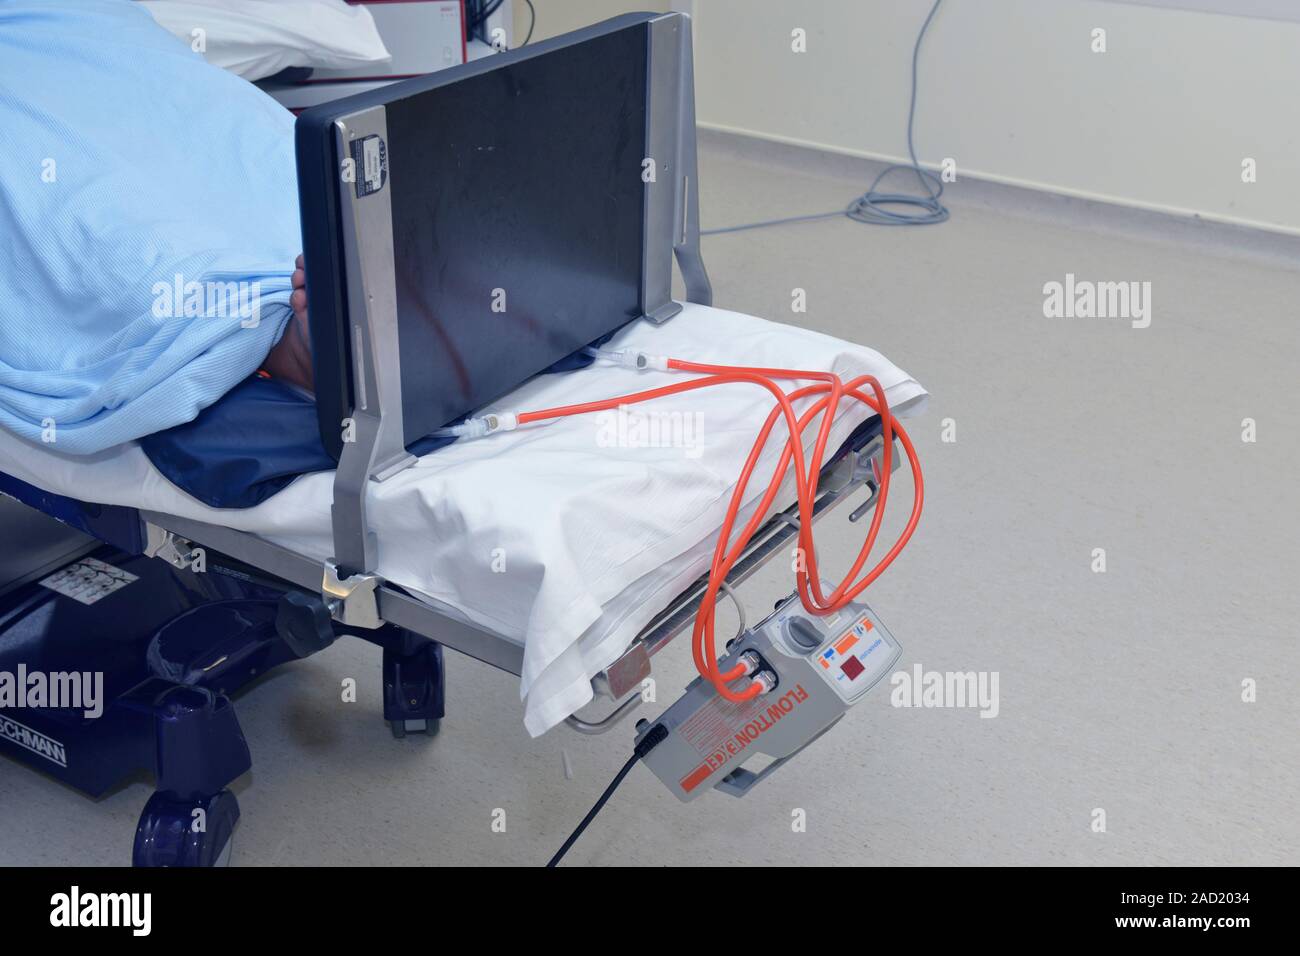 Compresión neumática intermitente (IPC) la bomba al final de la cama de un  hospital. La bomba está conectada al mangas inflables en las piernas del  paciente. Se infl Fotografía de stock -